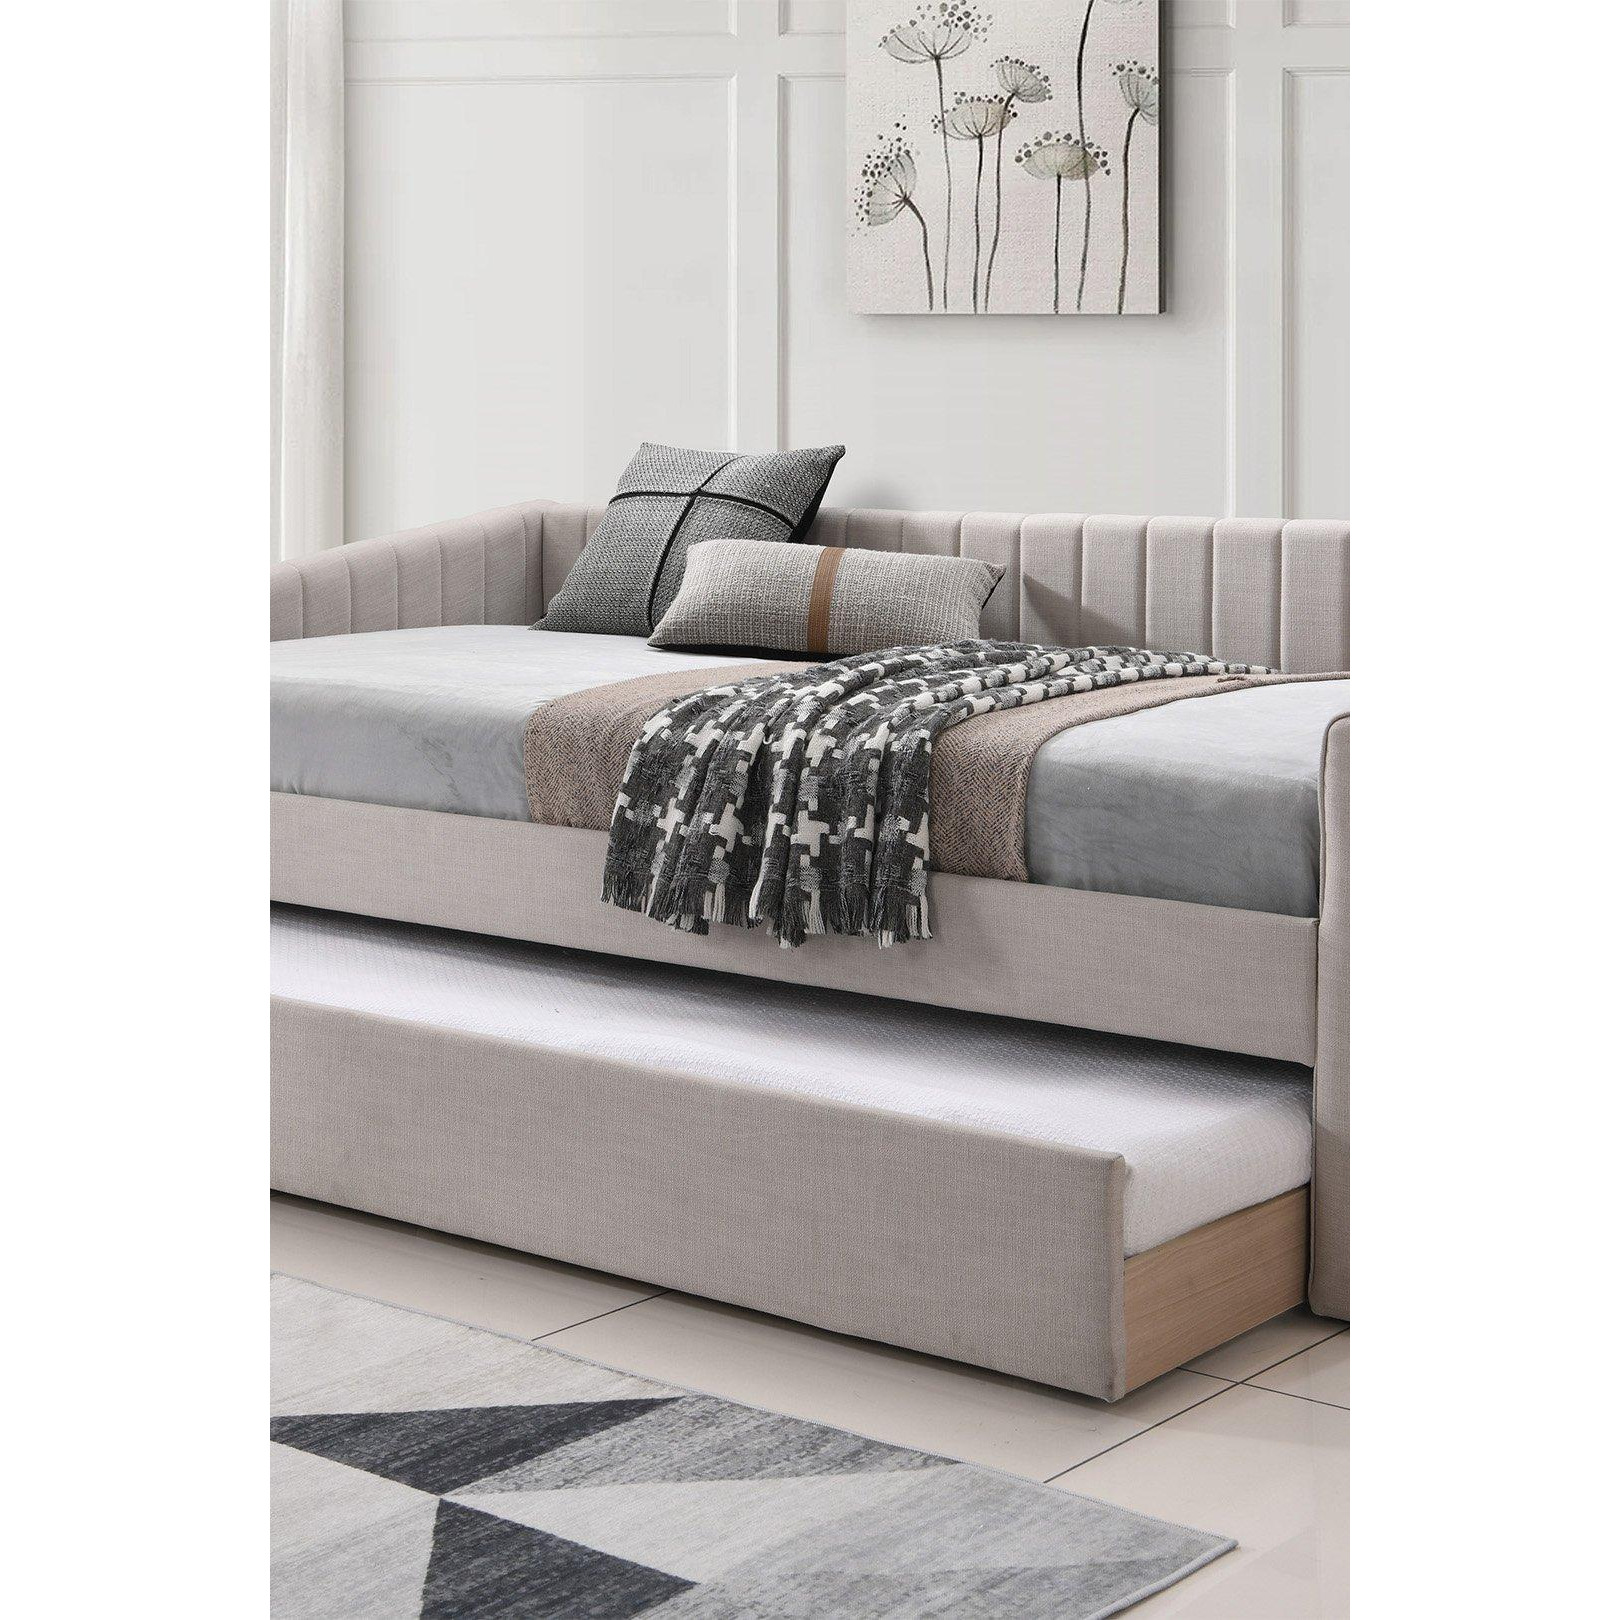 Sanderson Natural Oat Upholstered - Day Bed Including Underbed - image 1